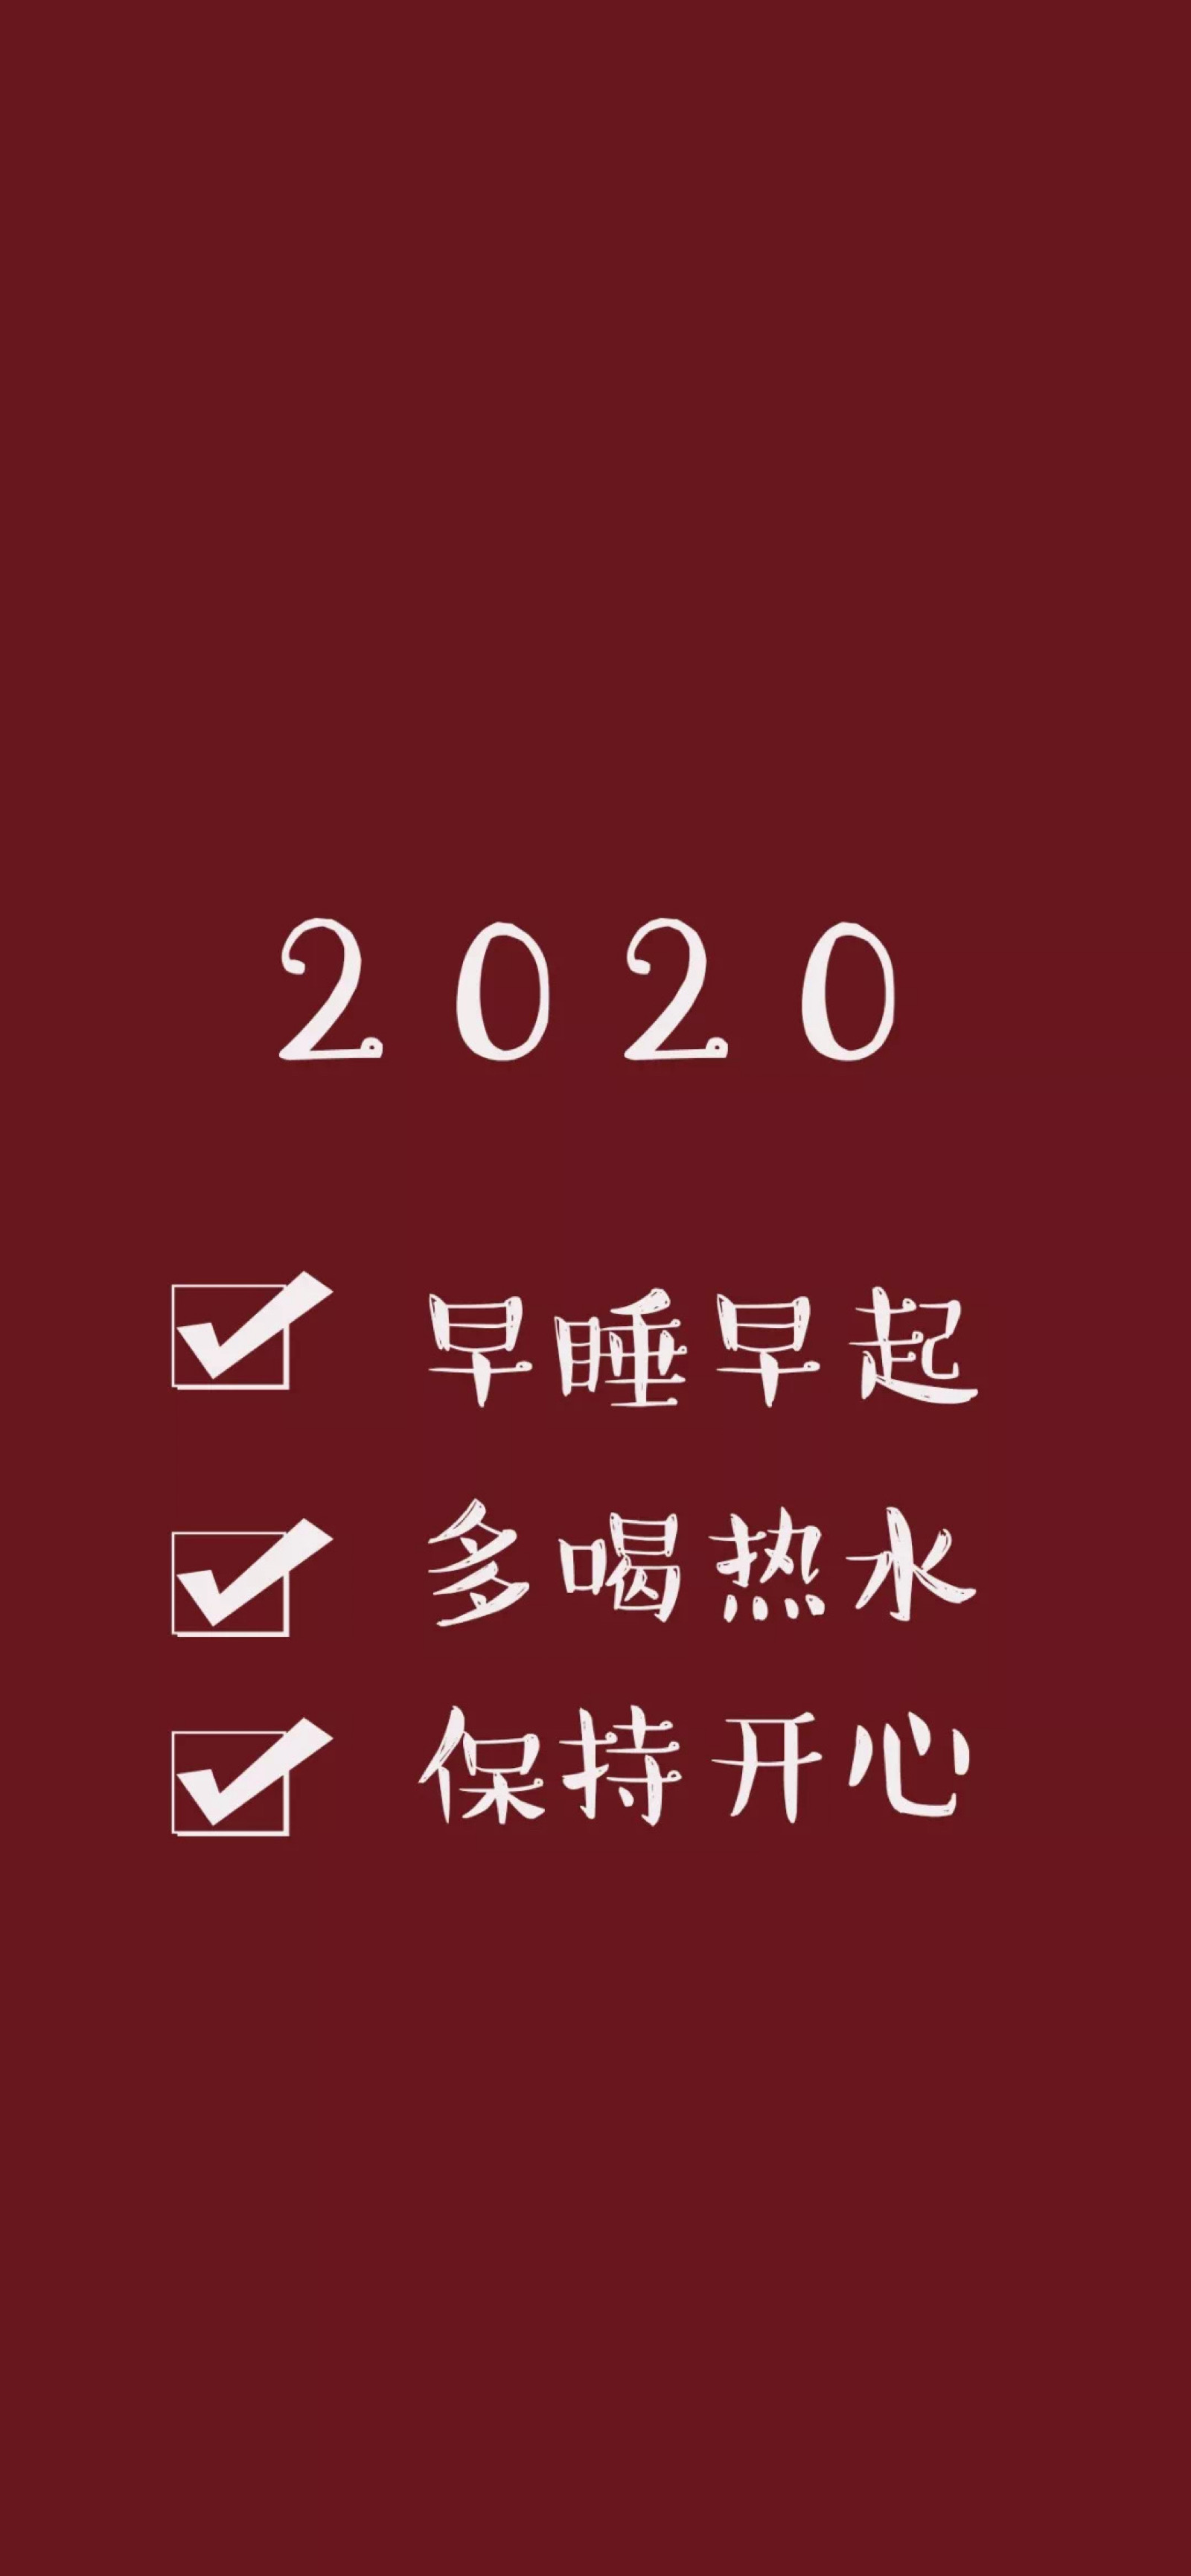 红色壁纸|2020小目标